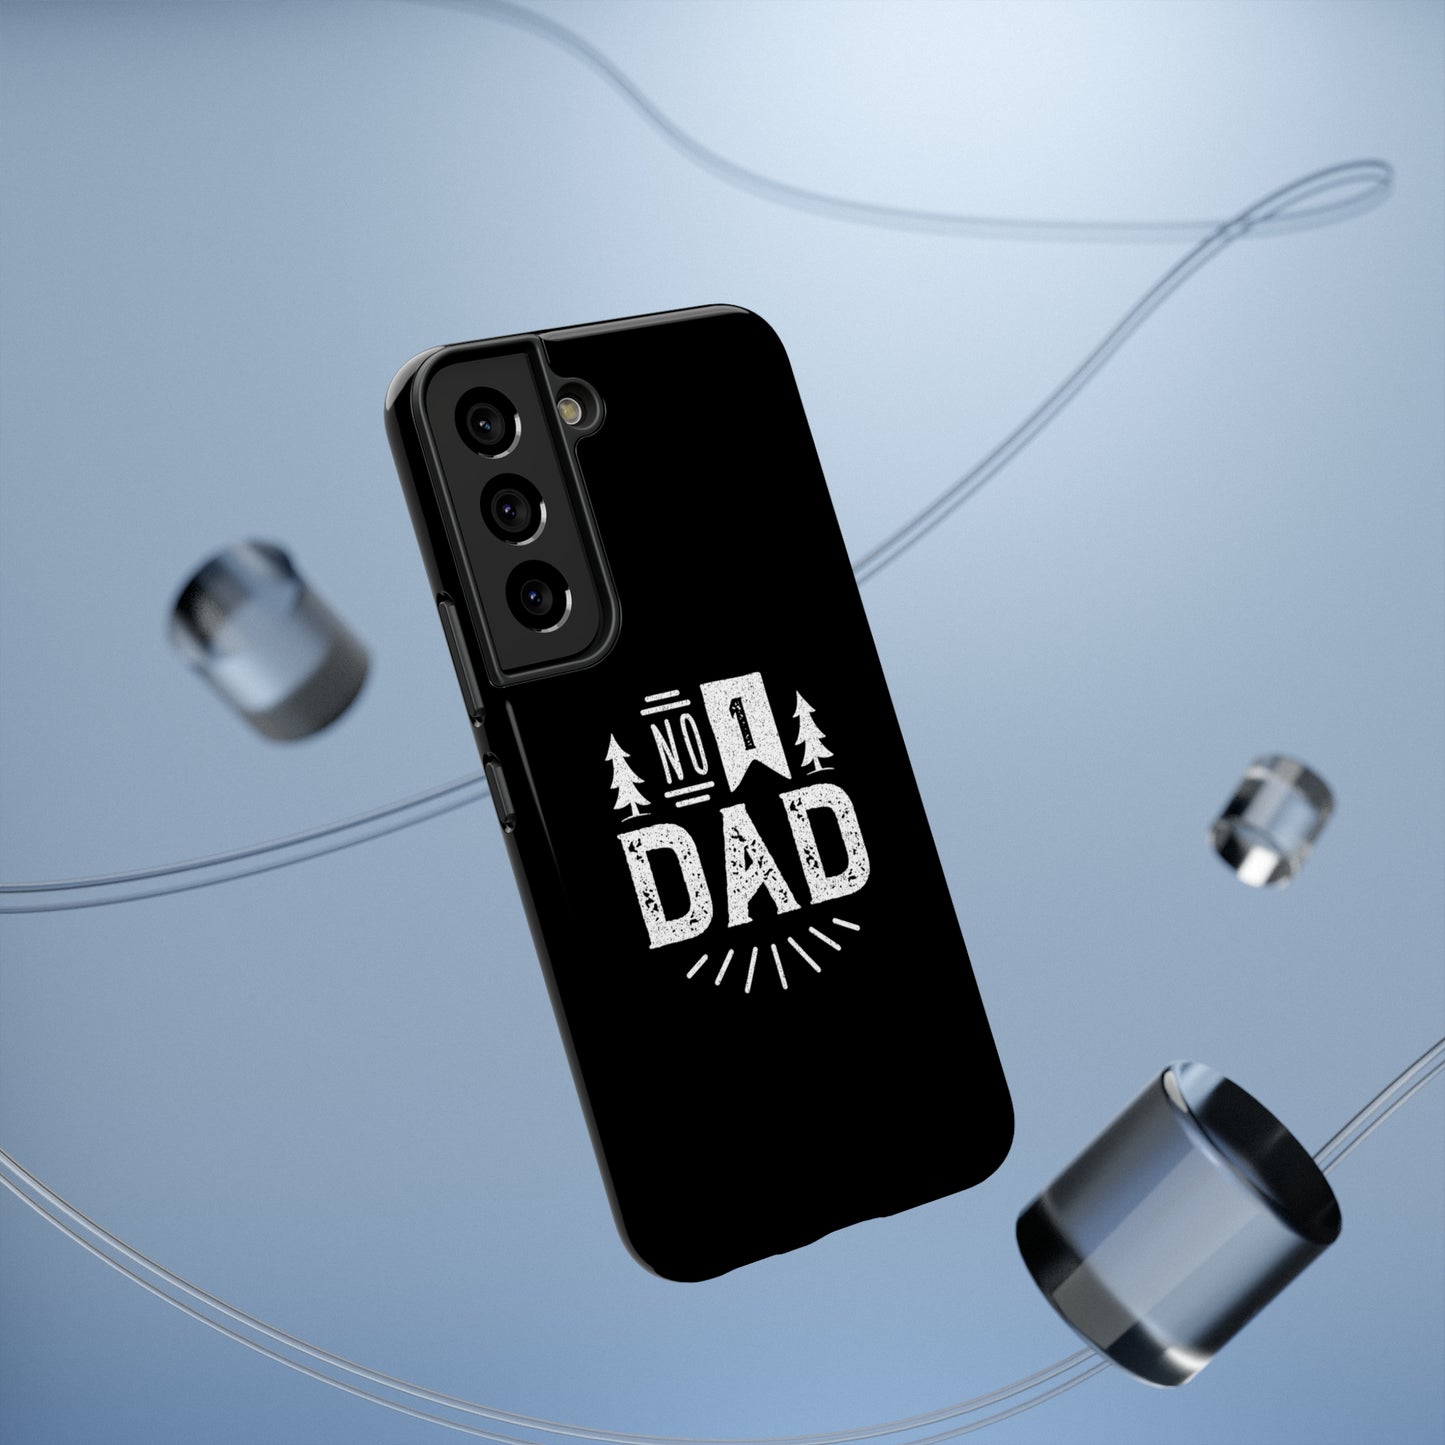 No. 1 Dad Phone Case - Black